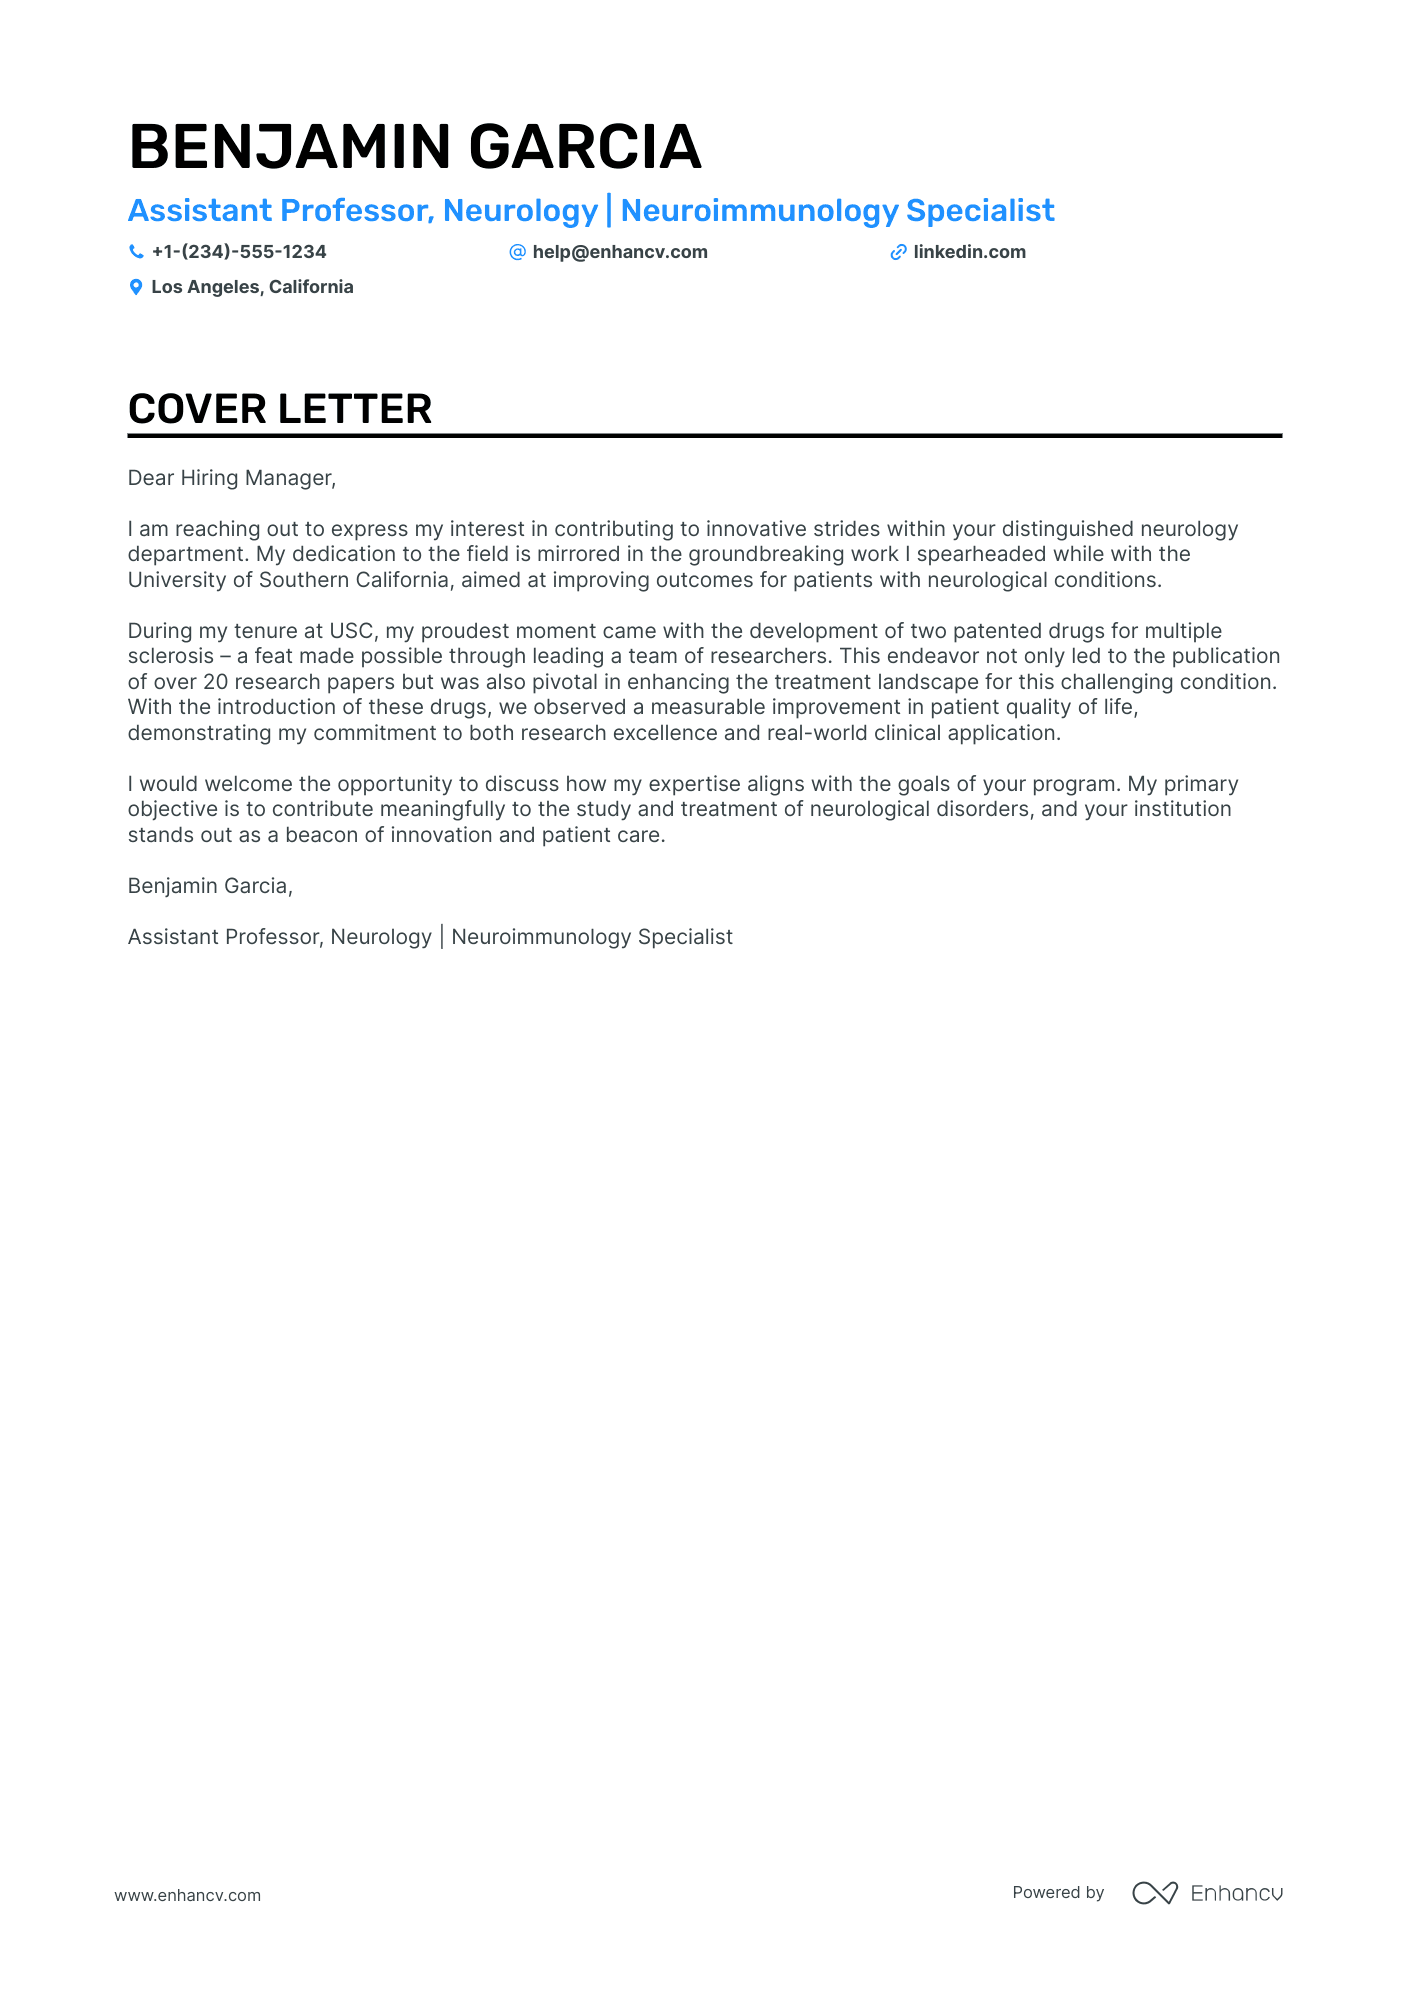 cover letter application professor